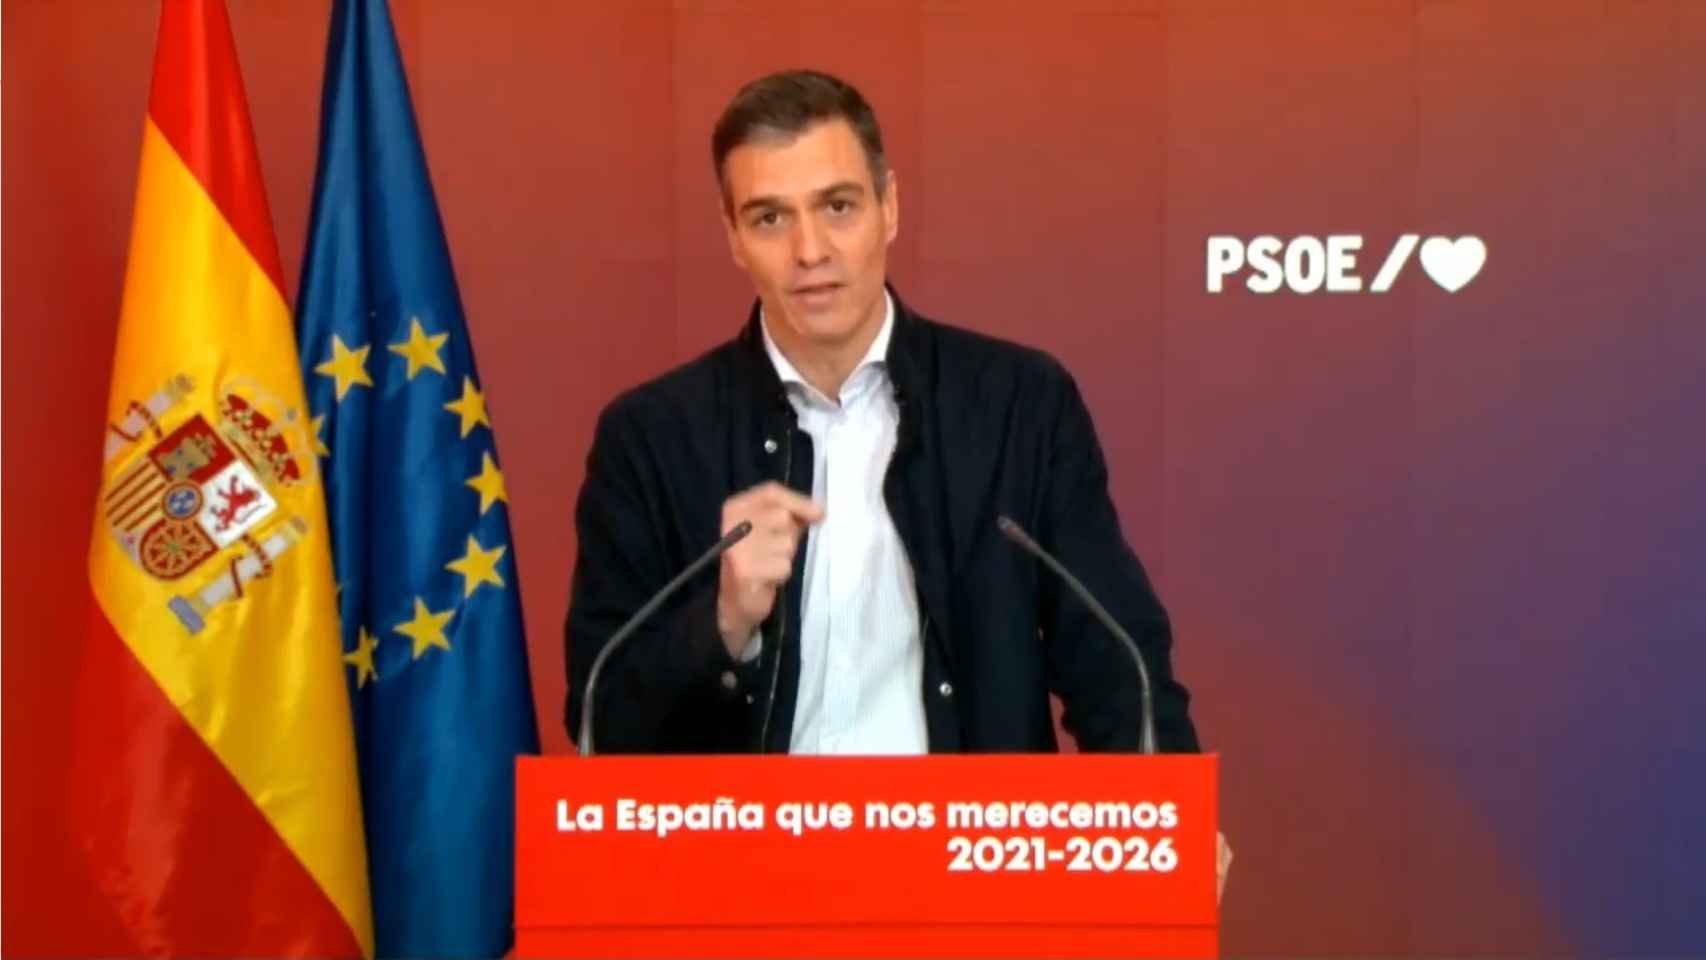 El presidente del Gobierno, Pedro Sánchez, durante el acto del PSOE La España que nos merecemos 2021-2026.